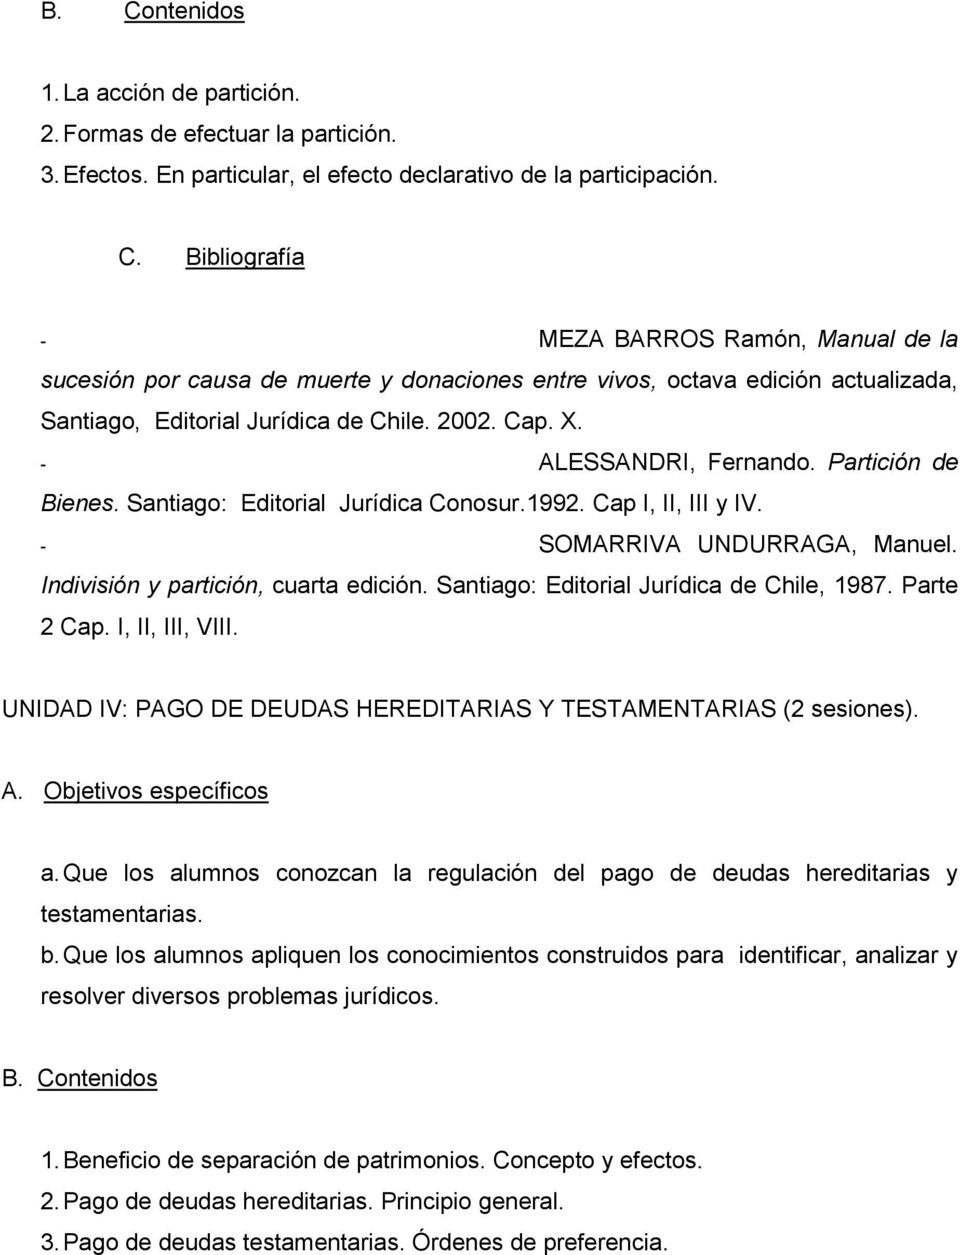 Santiago: Editorial Jurídica de Chile, 1987. Parte 2 Cap. I, II, III, VIII. UNIDAD IV: PAGO DE DEUDAS HEREDITARIAS Y TESTAMENTARIAS (2 sesiones). a.